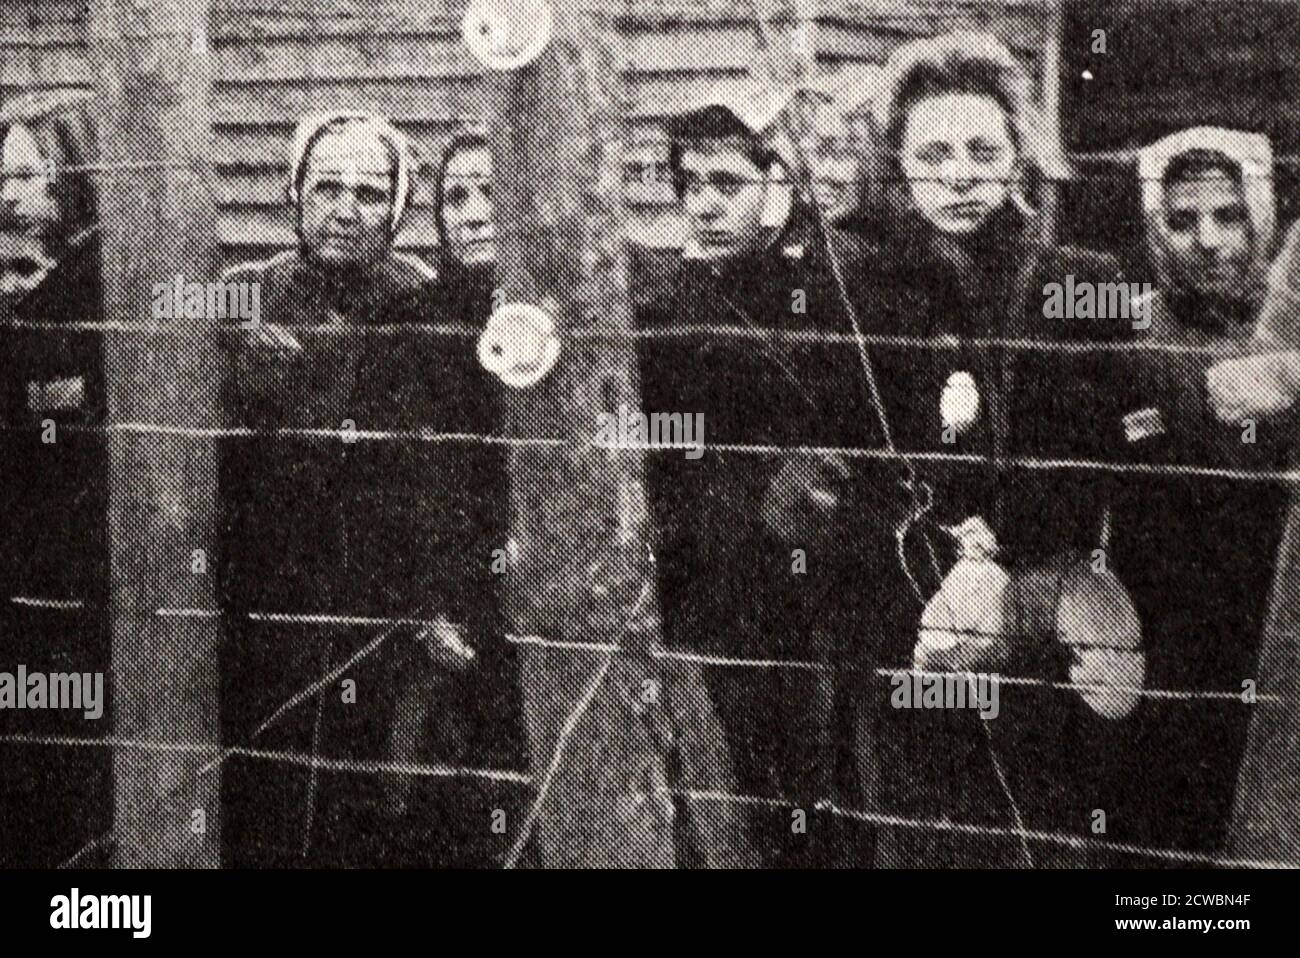 Fotografia in bianco e nero della seconda guerra mondiale (1939-1945) che mostra i campi di concentramento tedeschi al momento della loro liberazione da parte degli Alleati; un gruppo di prigionieri femminili dietro recinzioni a filo spinato guarda la telecamera. Foto Stock